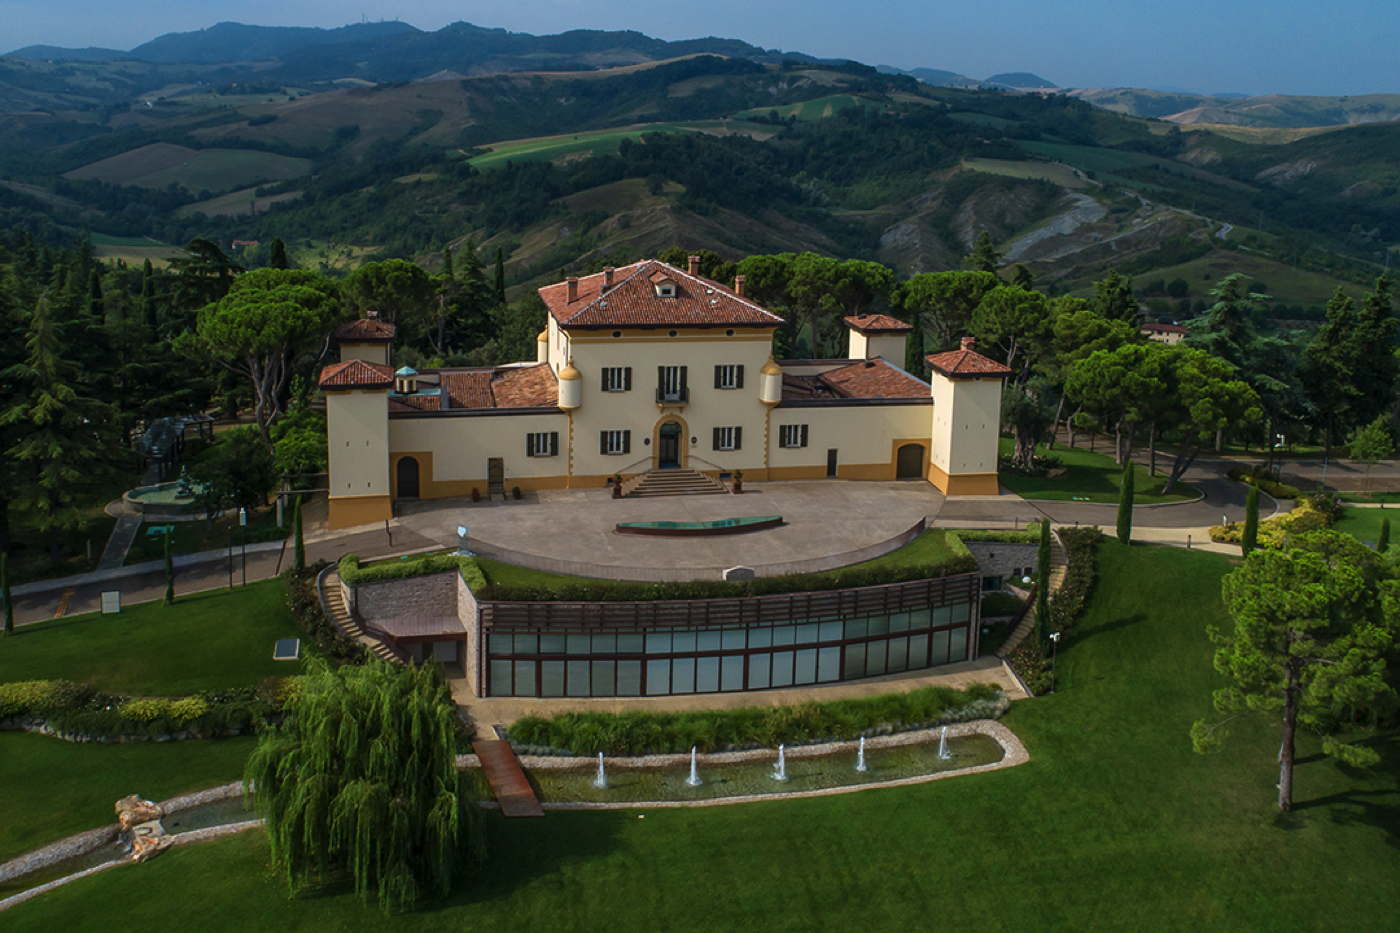 Hotel with SPA und tennis court in Italy Emilia Romagna Varignana